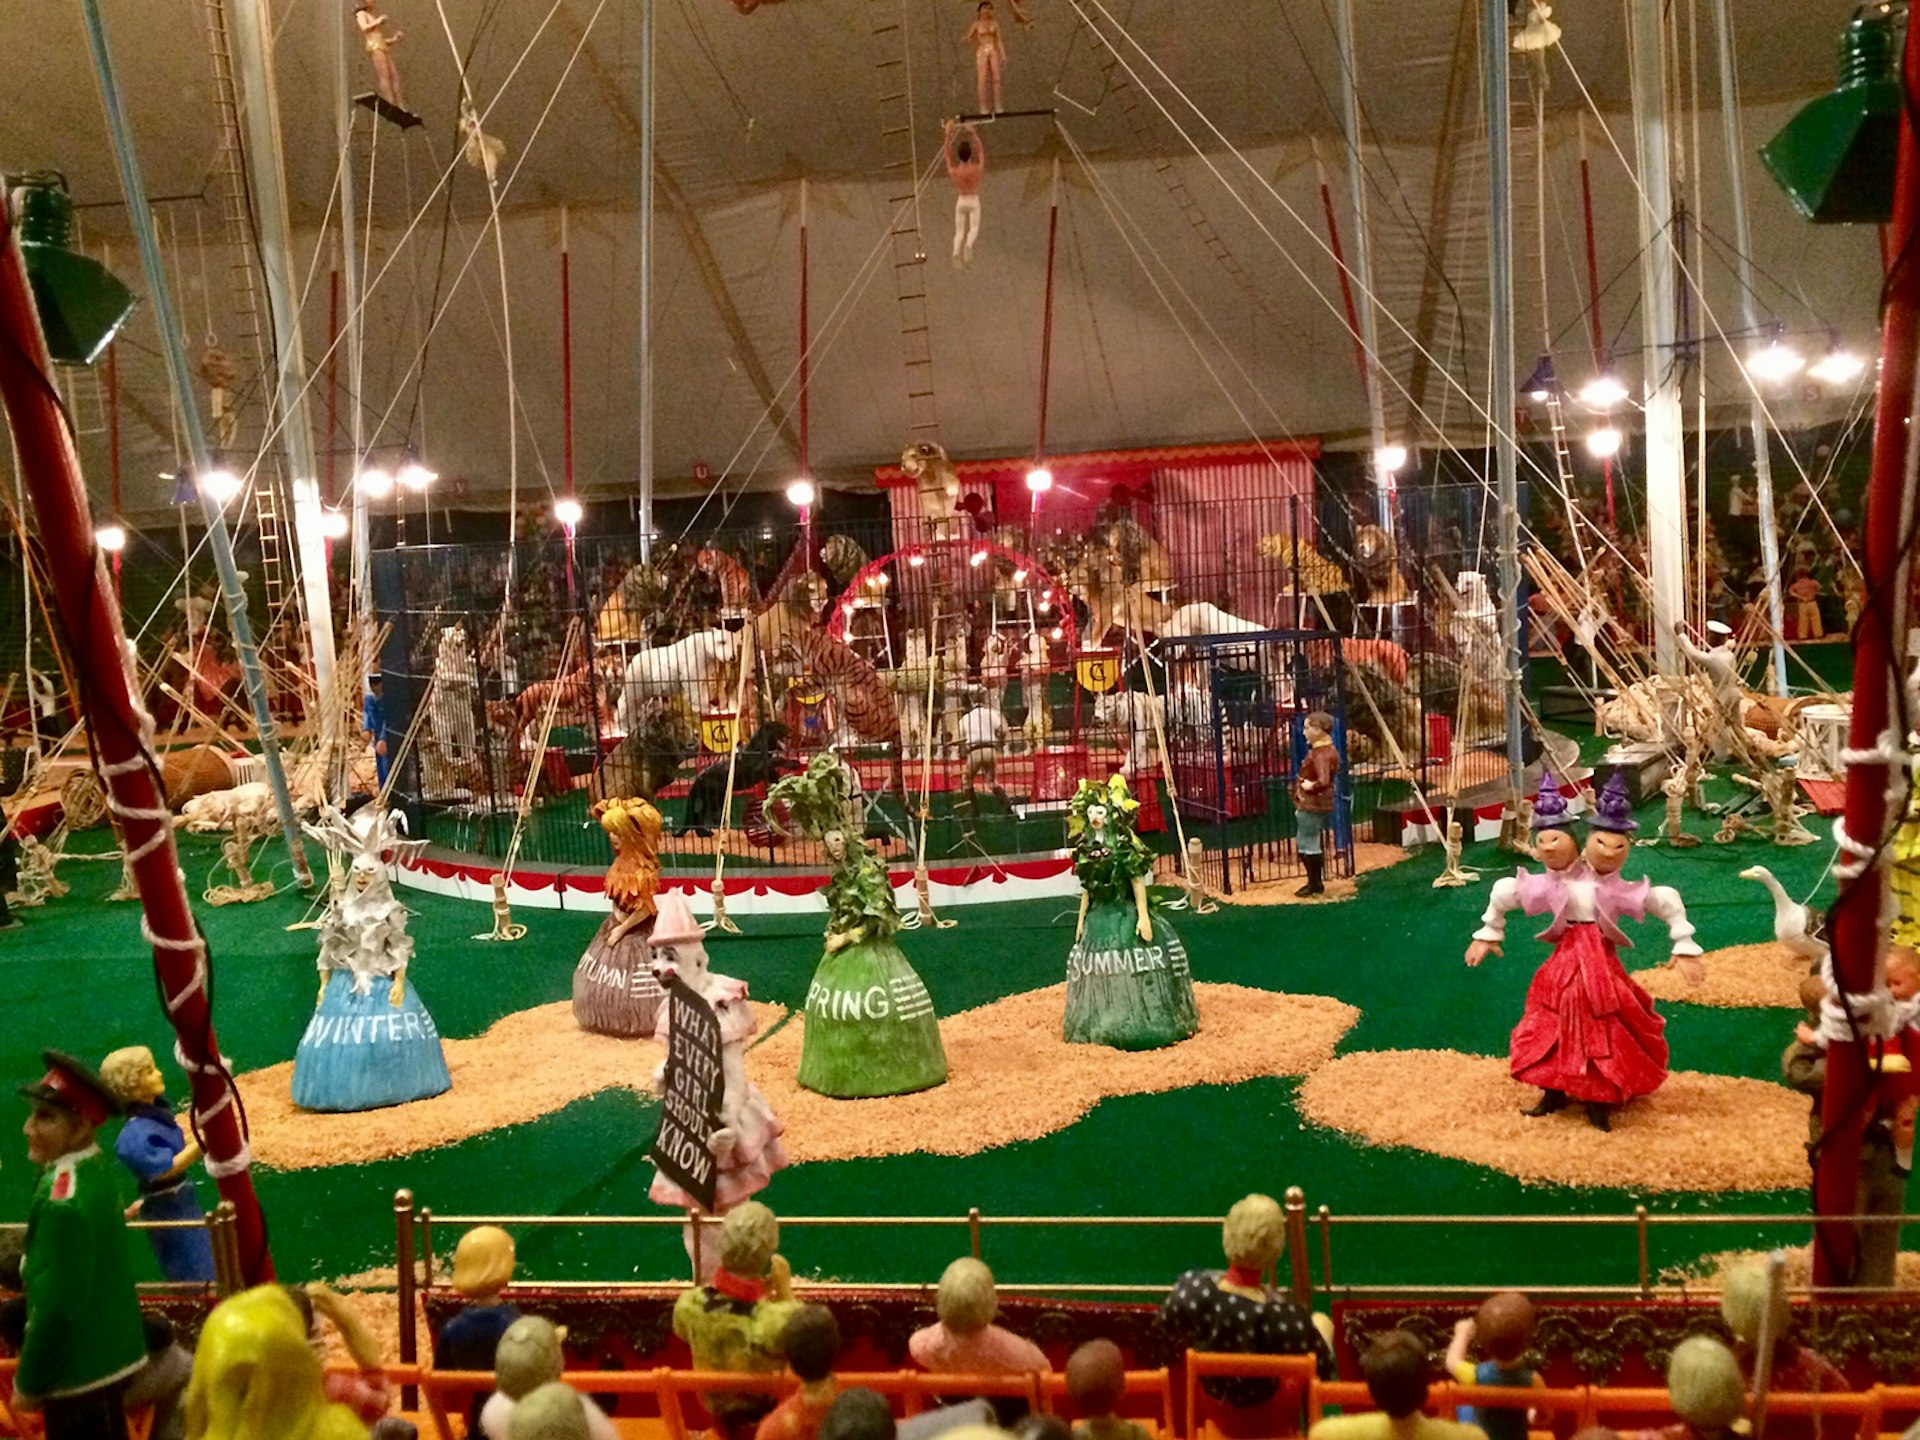 ringling circus diorama close-up